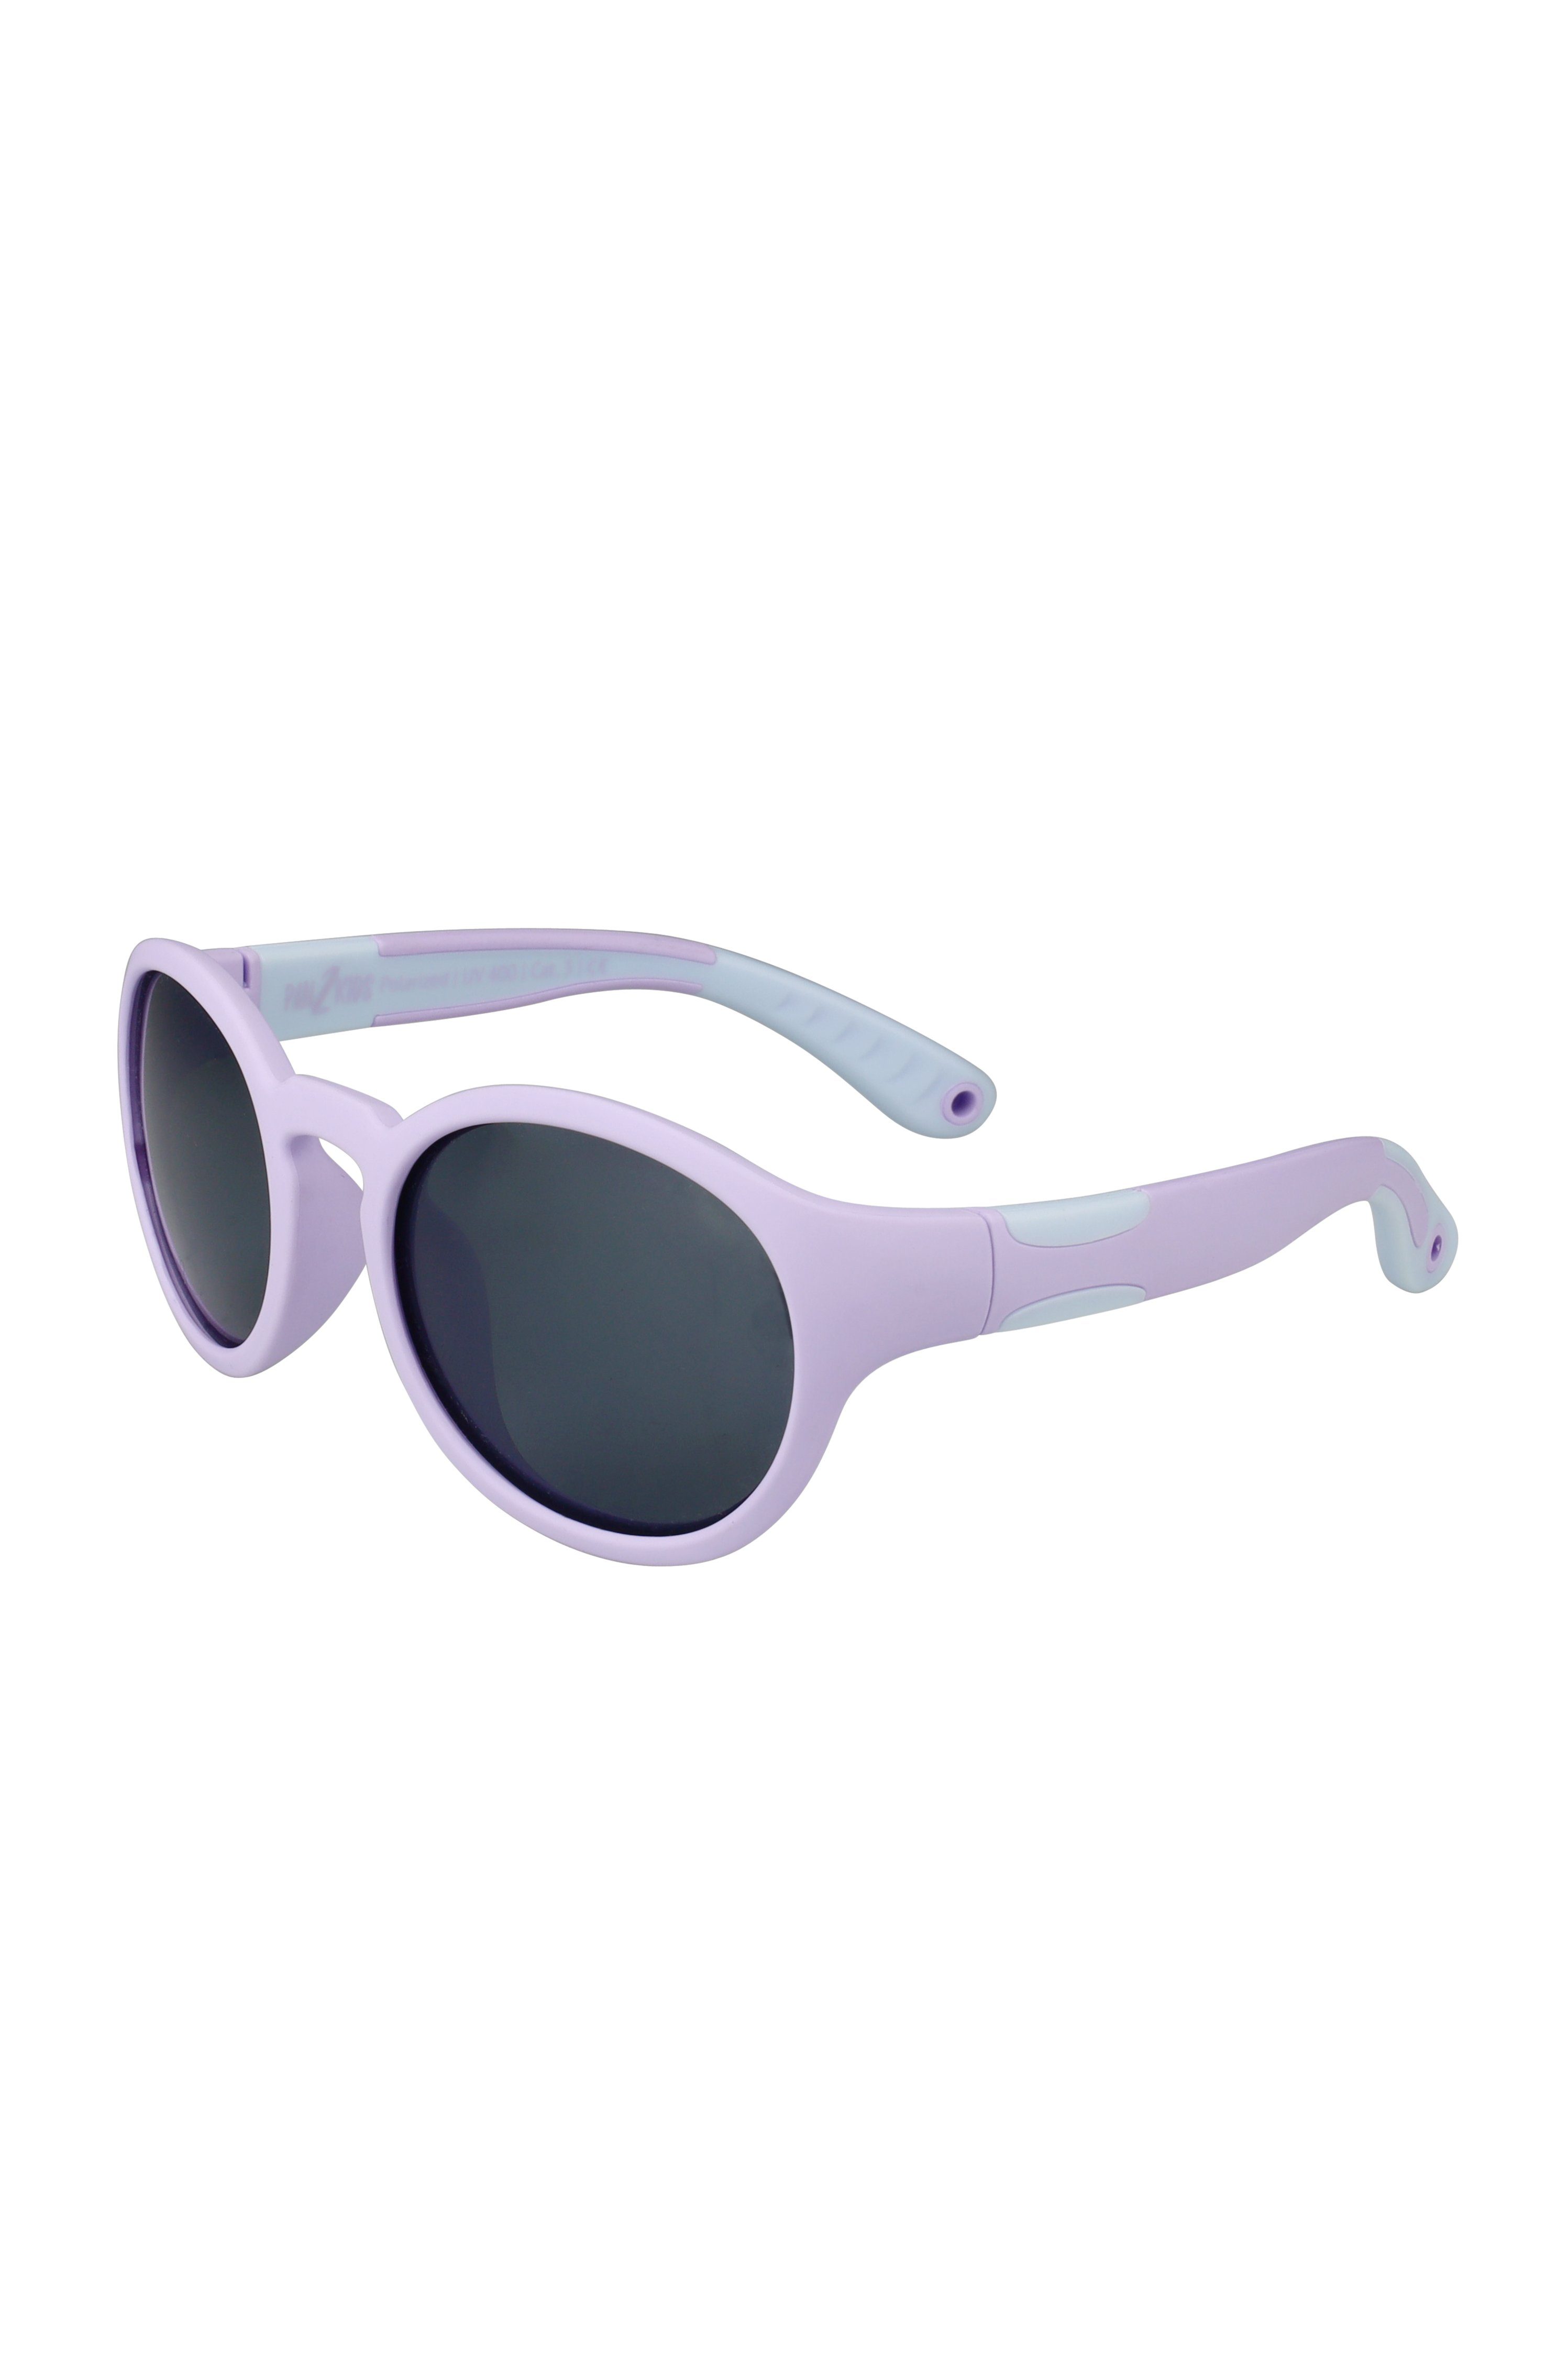 ActiveSol SUNGLASSES Sonnenbrille für Design, – Jahre, Pan2Kids, 2 - Lavender Panto Kinder 5 Digital polarisiert